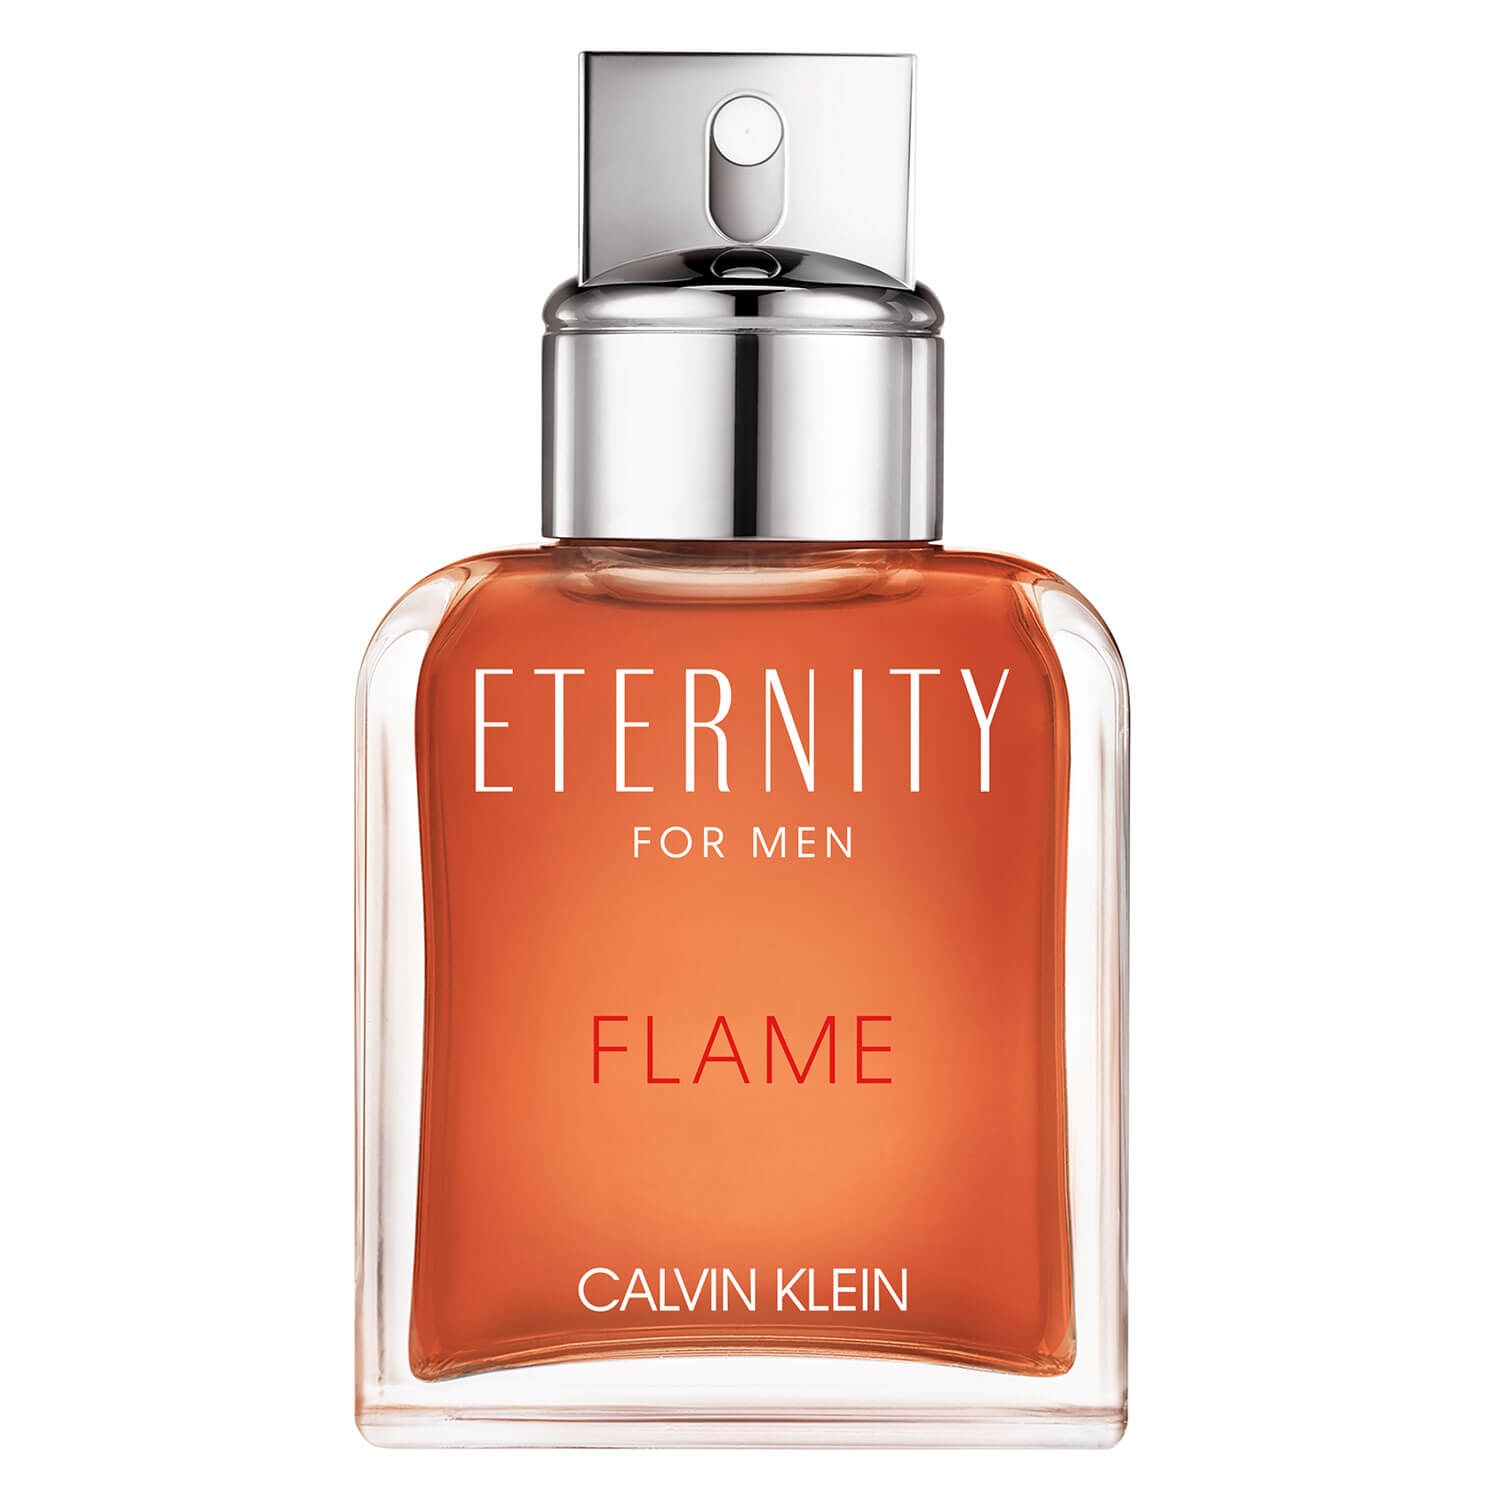 Product image from Eternity - For Men Flame Eau de Toilette